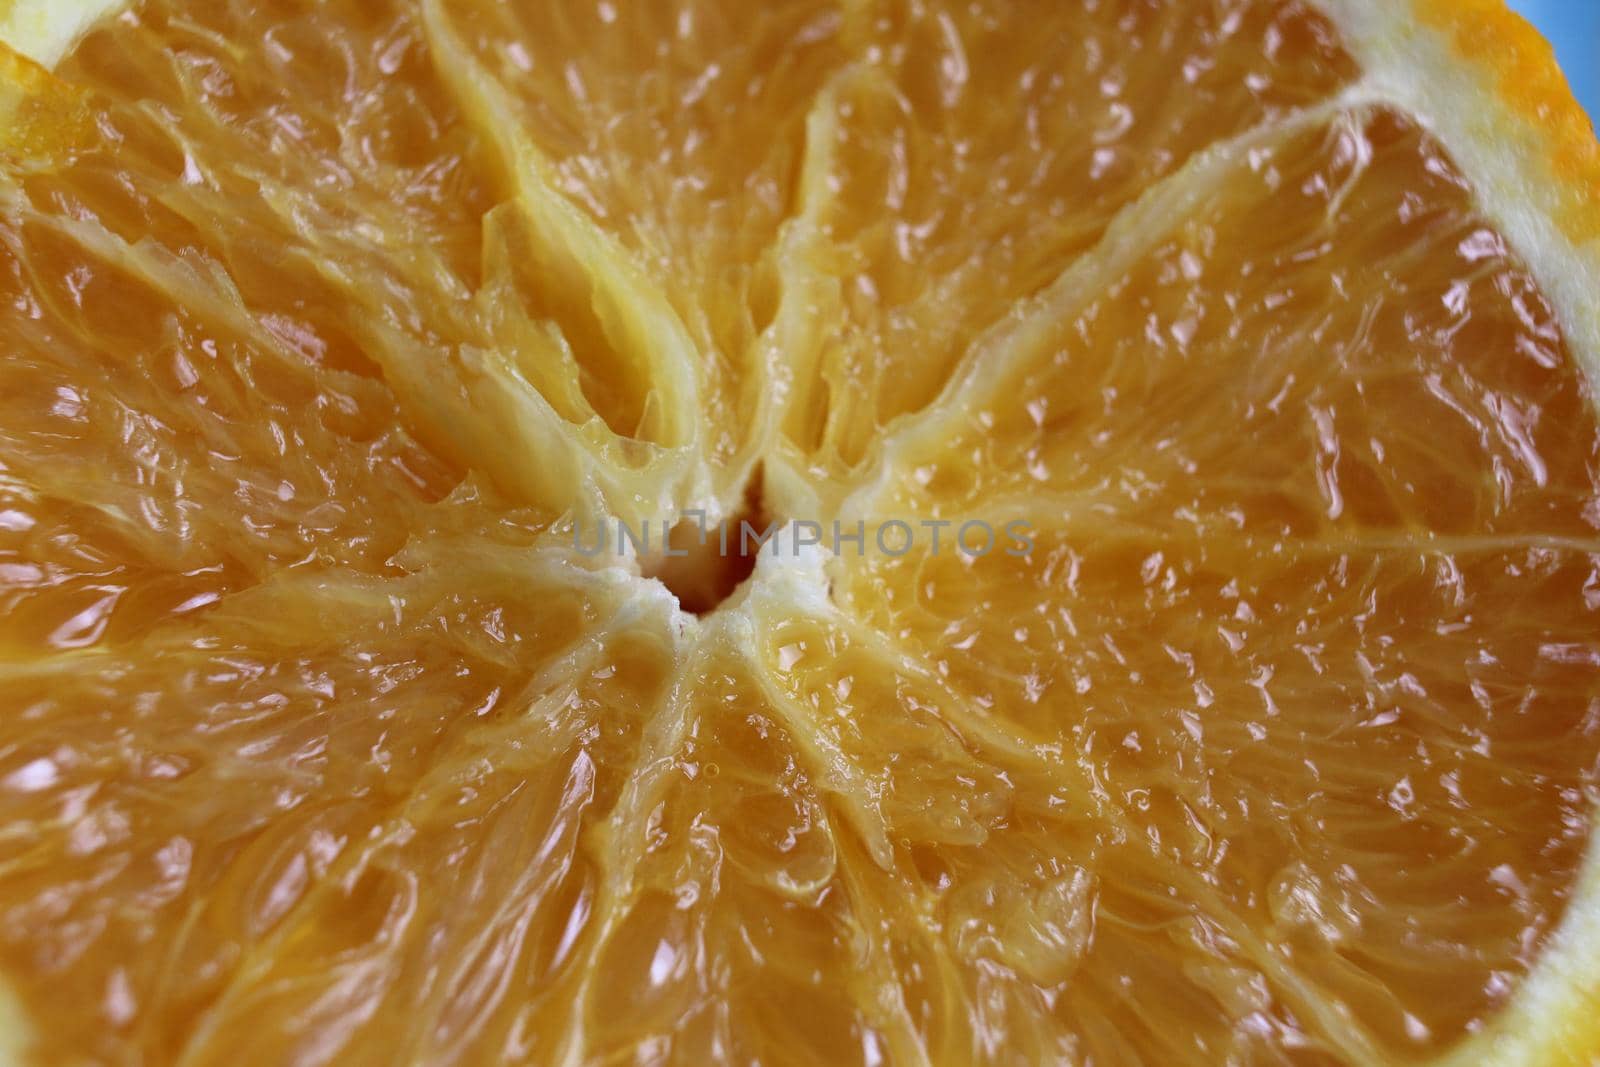 cut of the orange close-up. Macro photo of eating orange fruit. Orange fruit background.